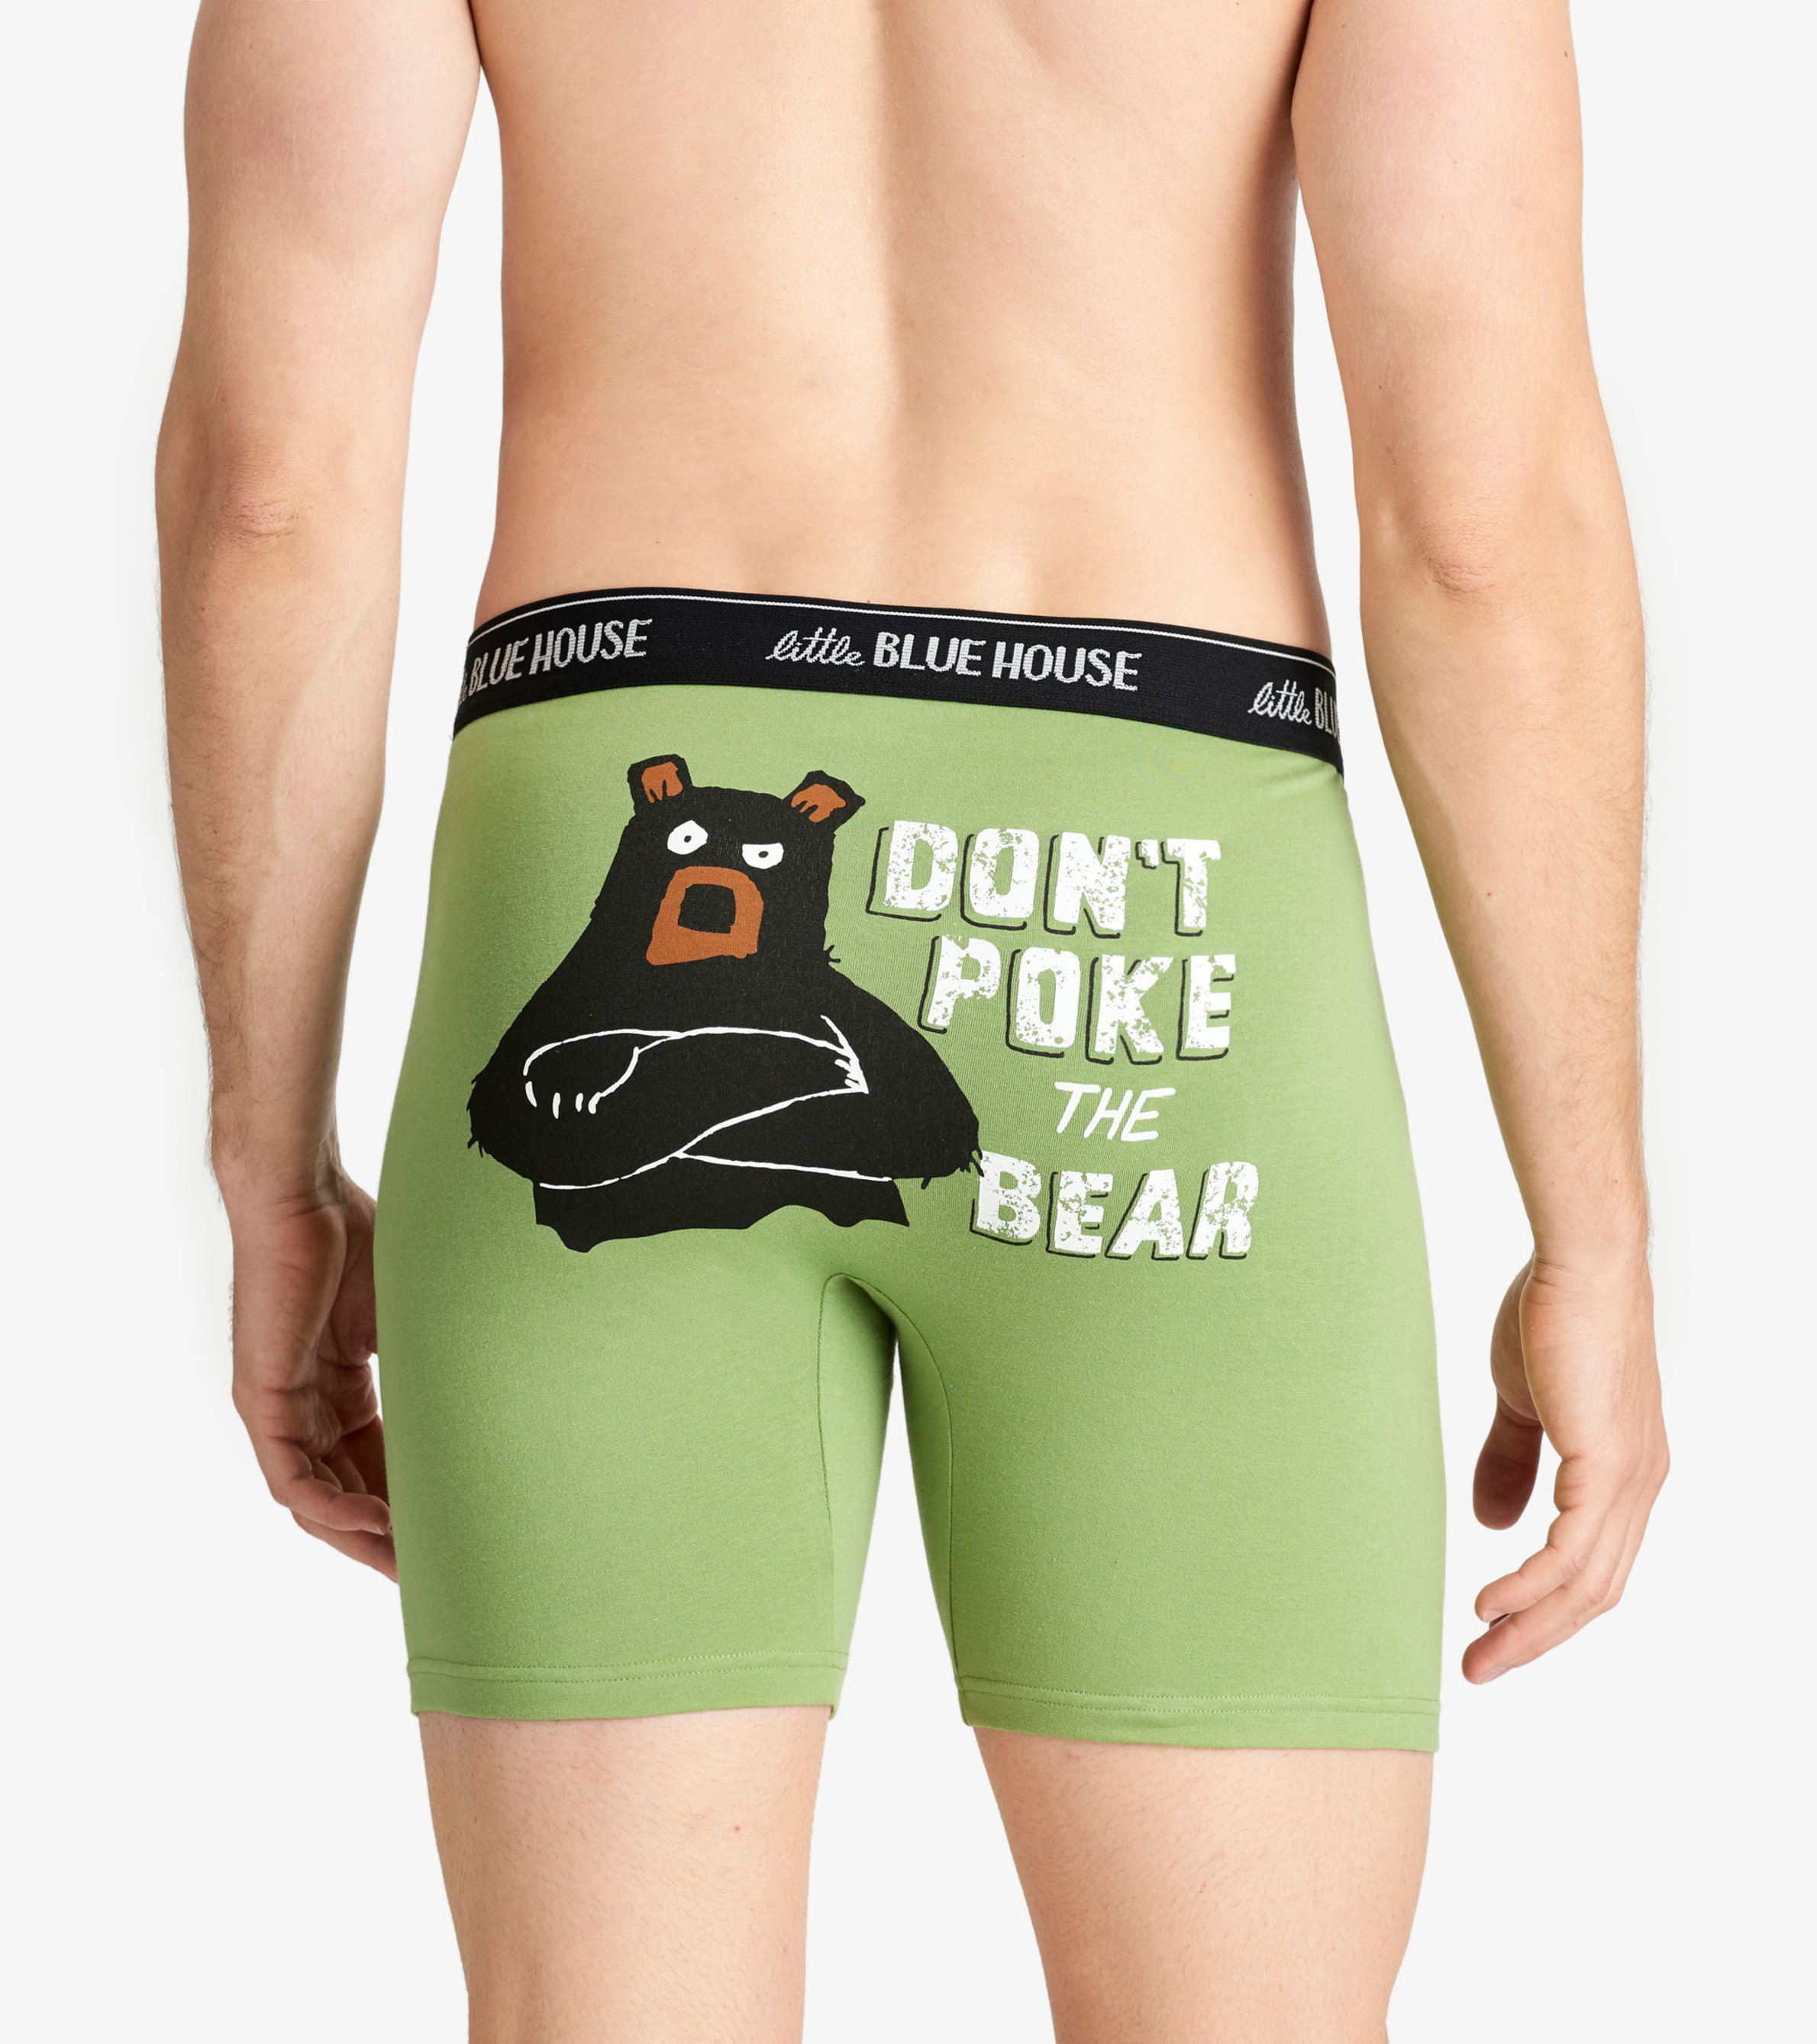 Do Not Poke The Bear T-Shirt